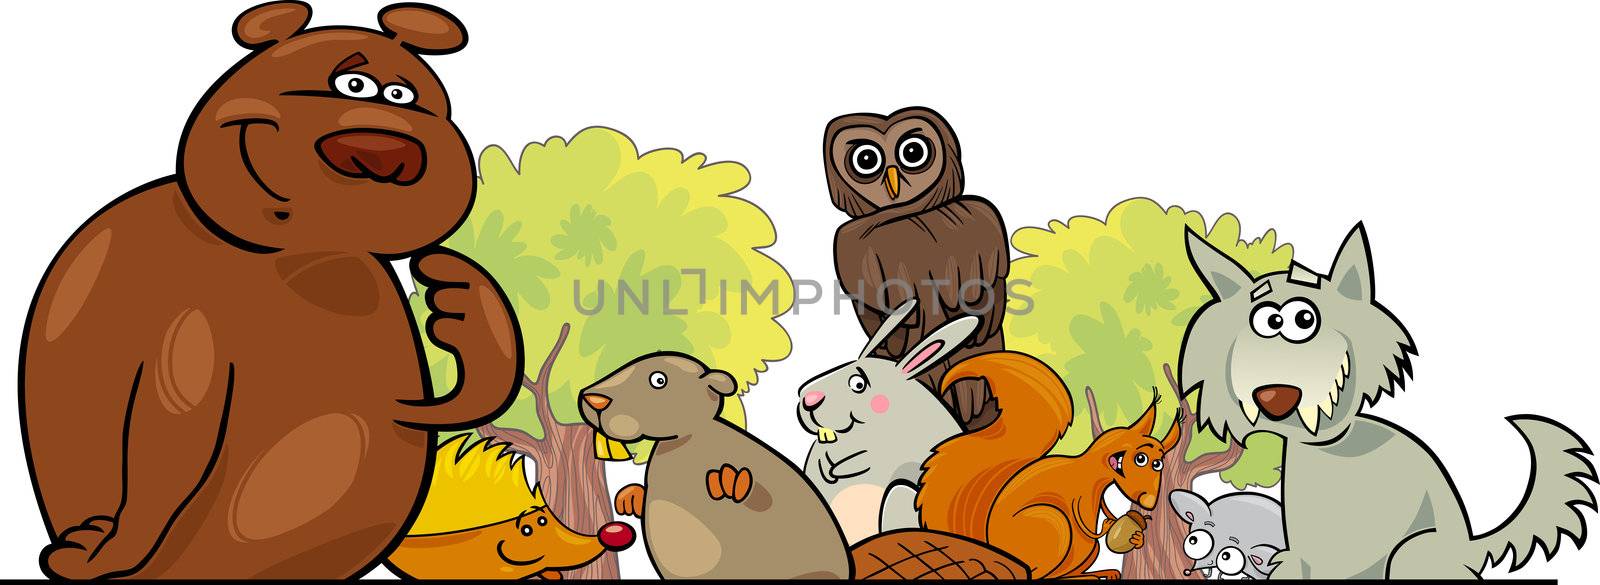 Cartoon forest animals design by izakowski